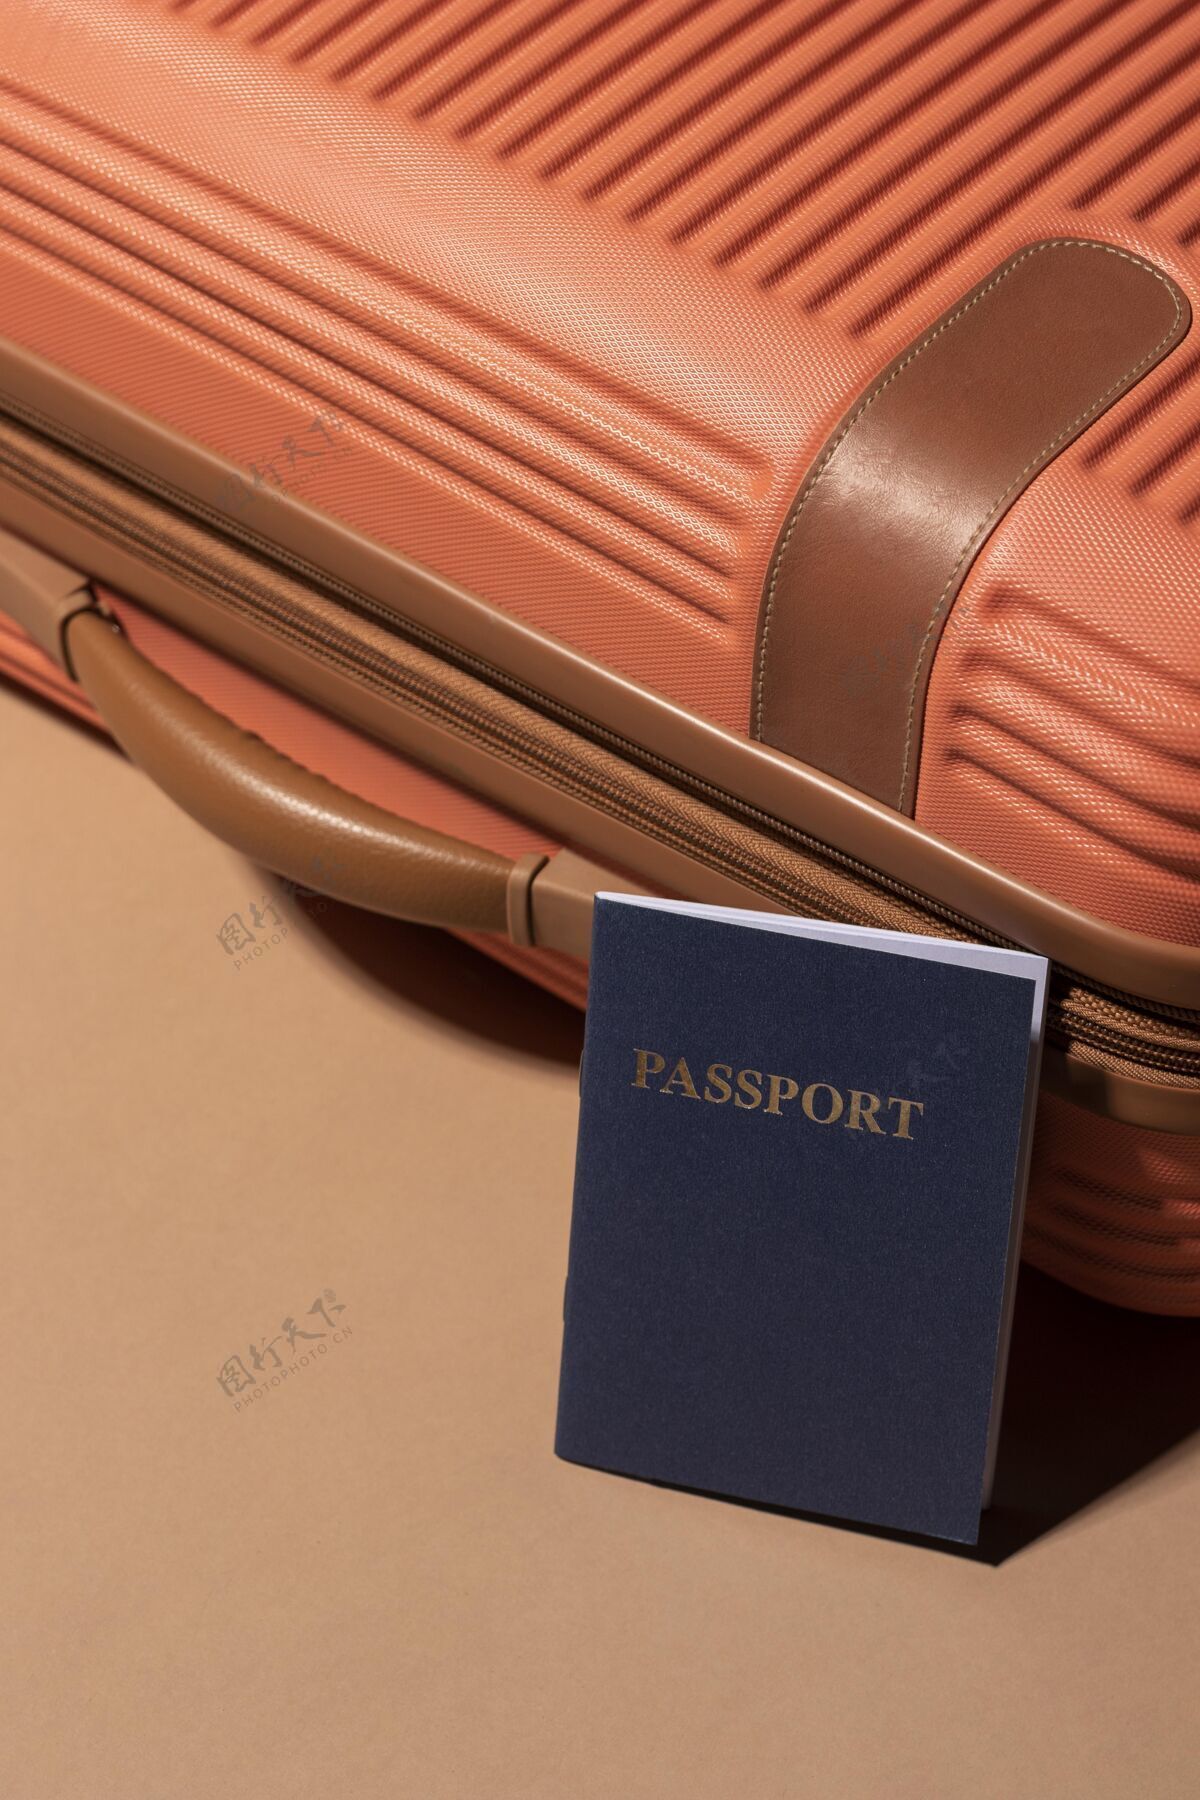 行李带护照旅行时准备好的行李护照行李旅行